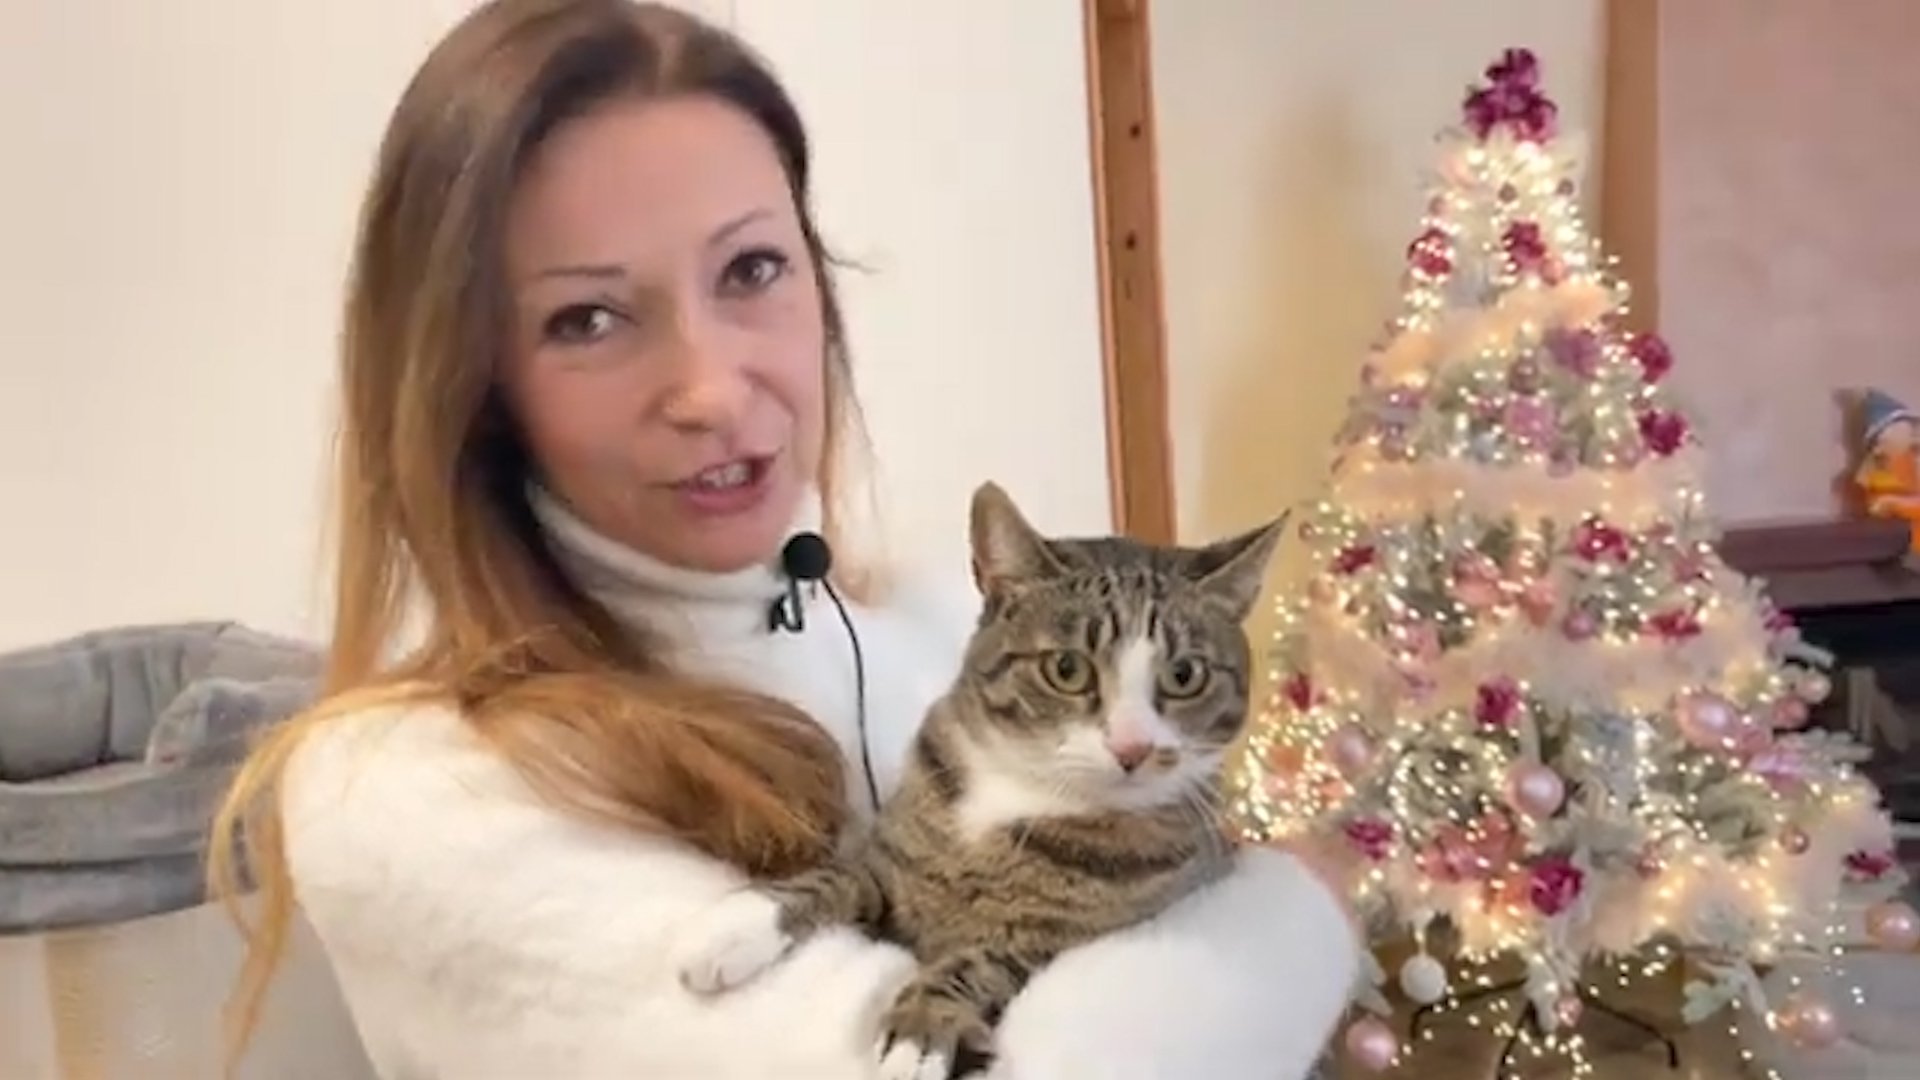 Dopo due anni ritrova l’amata gattina scomparsa: la storia di Kasia e Mia